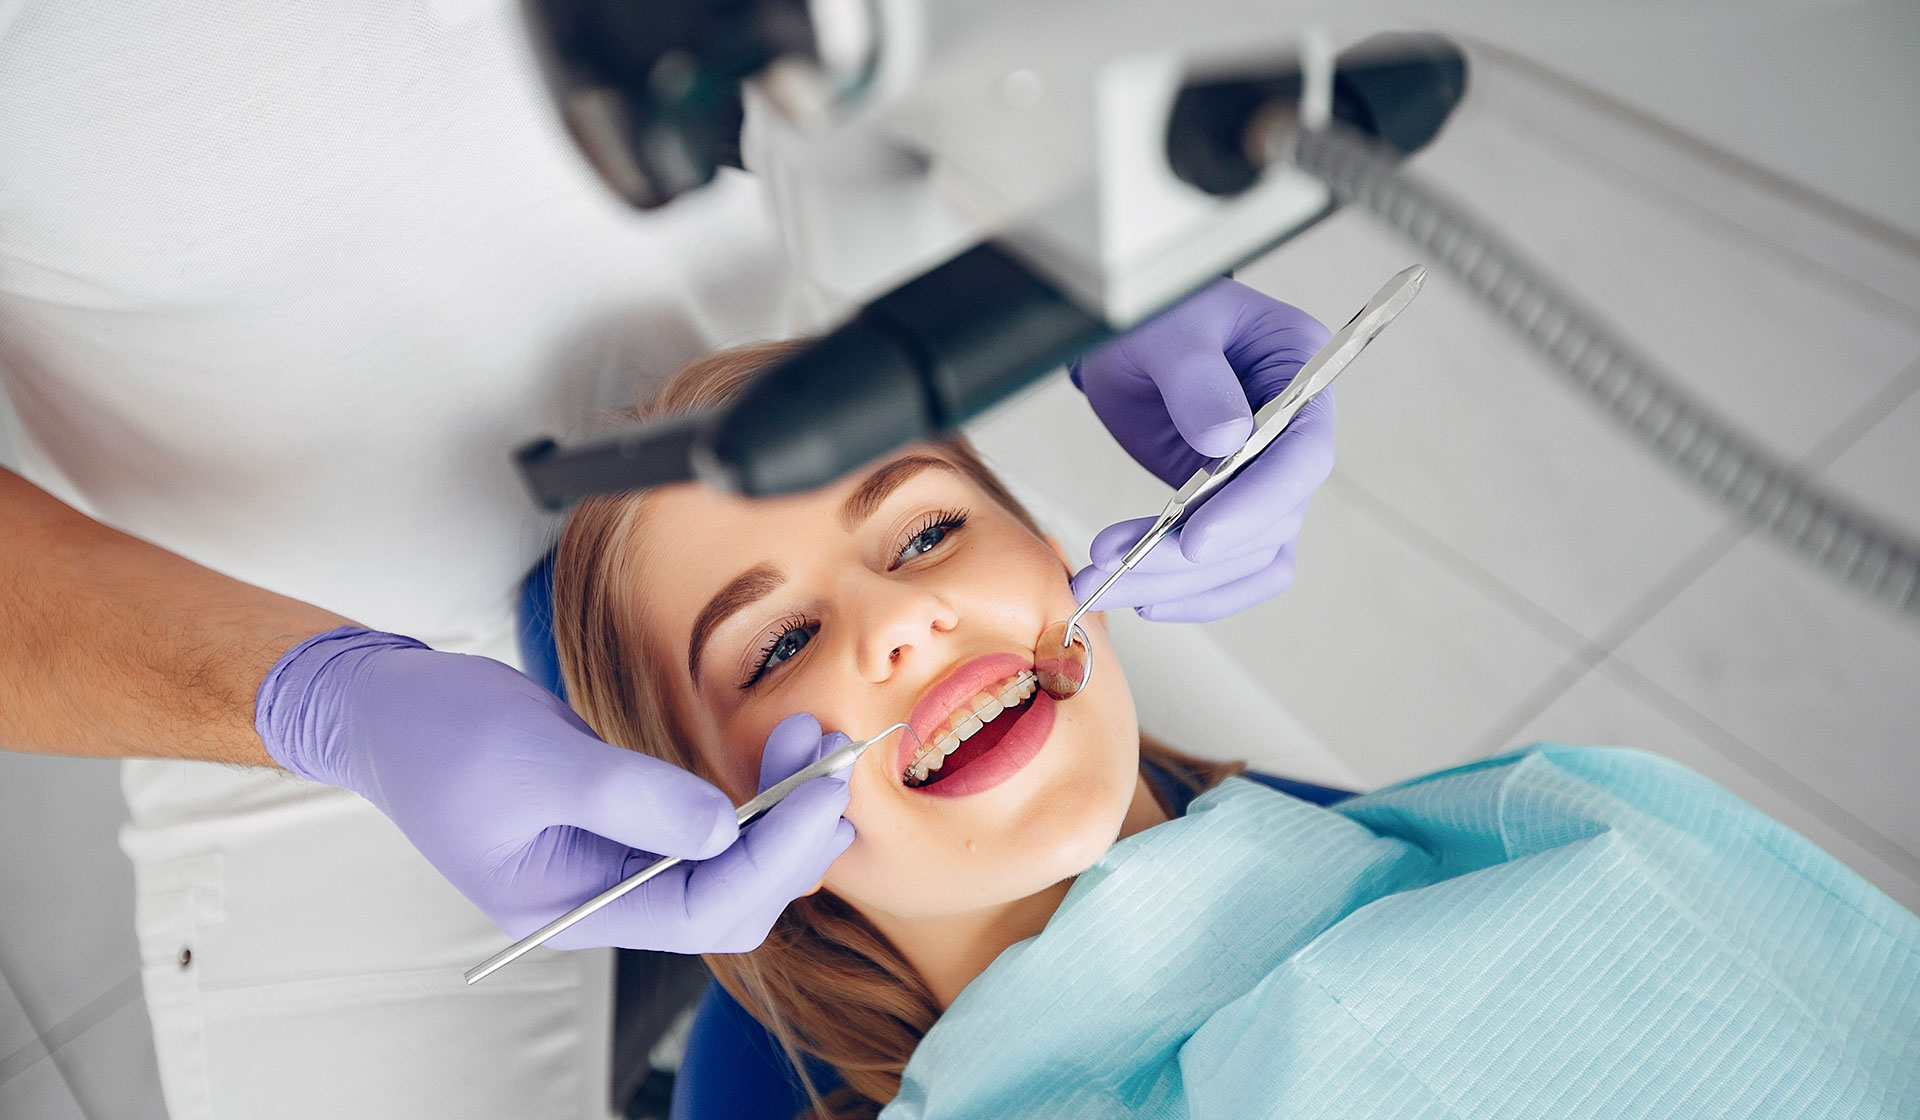 С 16 марта 2020г. в клинике "Ваш доктор" г. Пикалево начинает работать стоматологический кабинет.